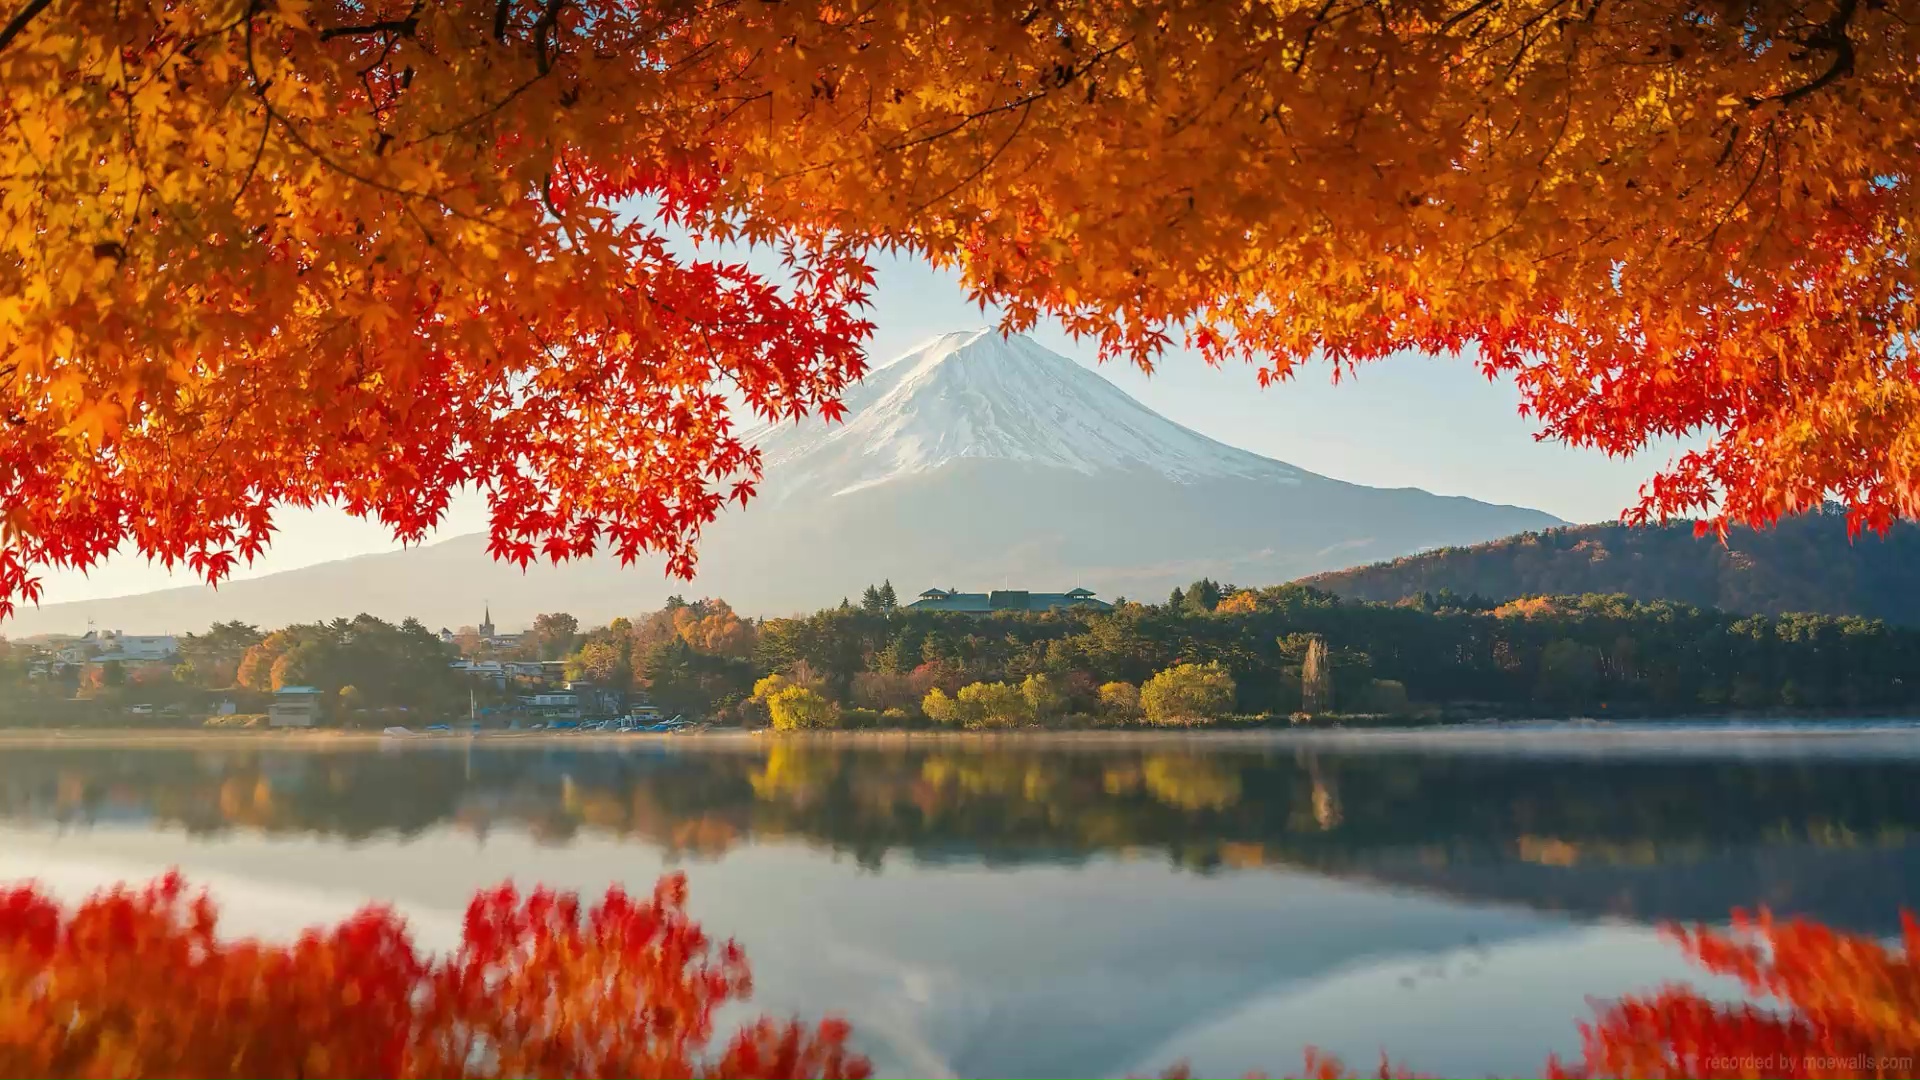 Mount Fuji Autumn Live Wallpaper - MoeWalls